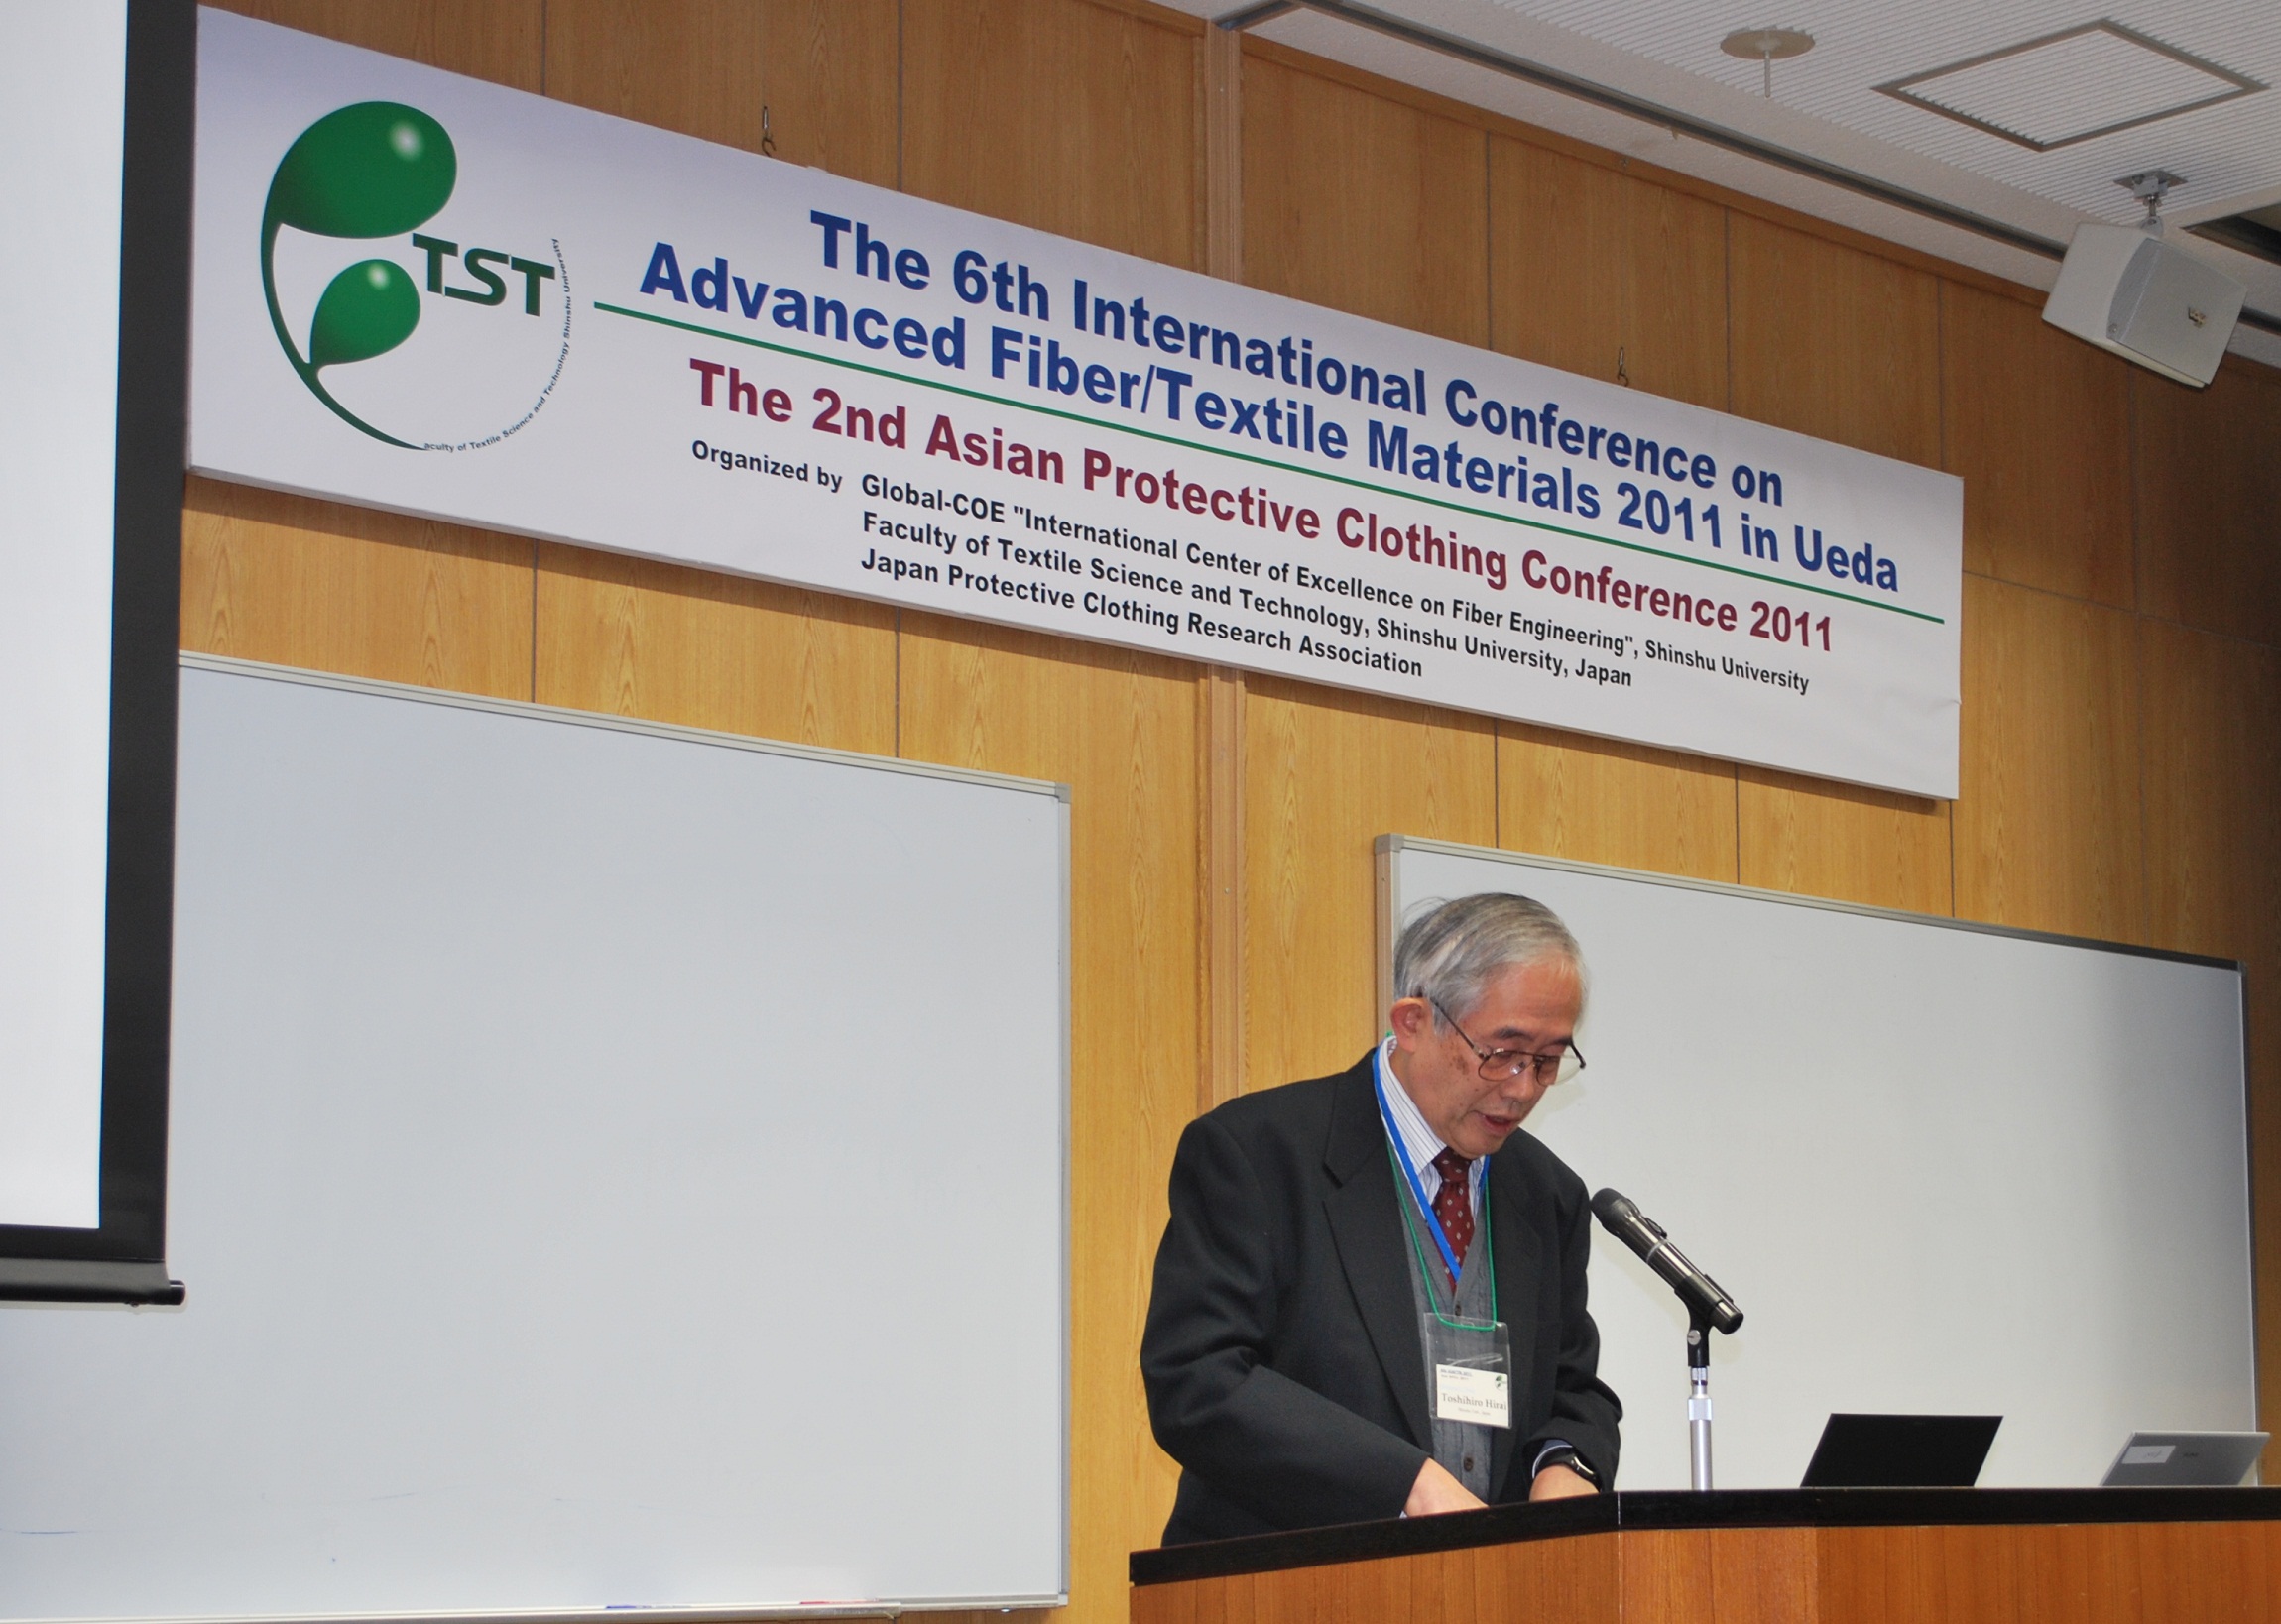 【報告】
「International Conference on Advanced Fiber / Textile Materials 2011」が開催されました 